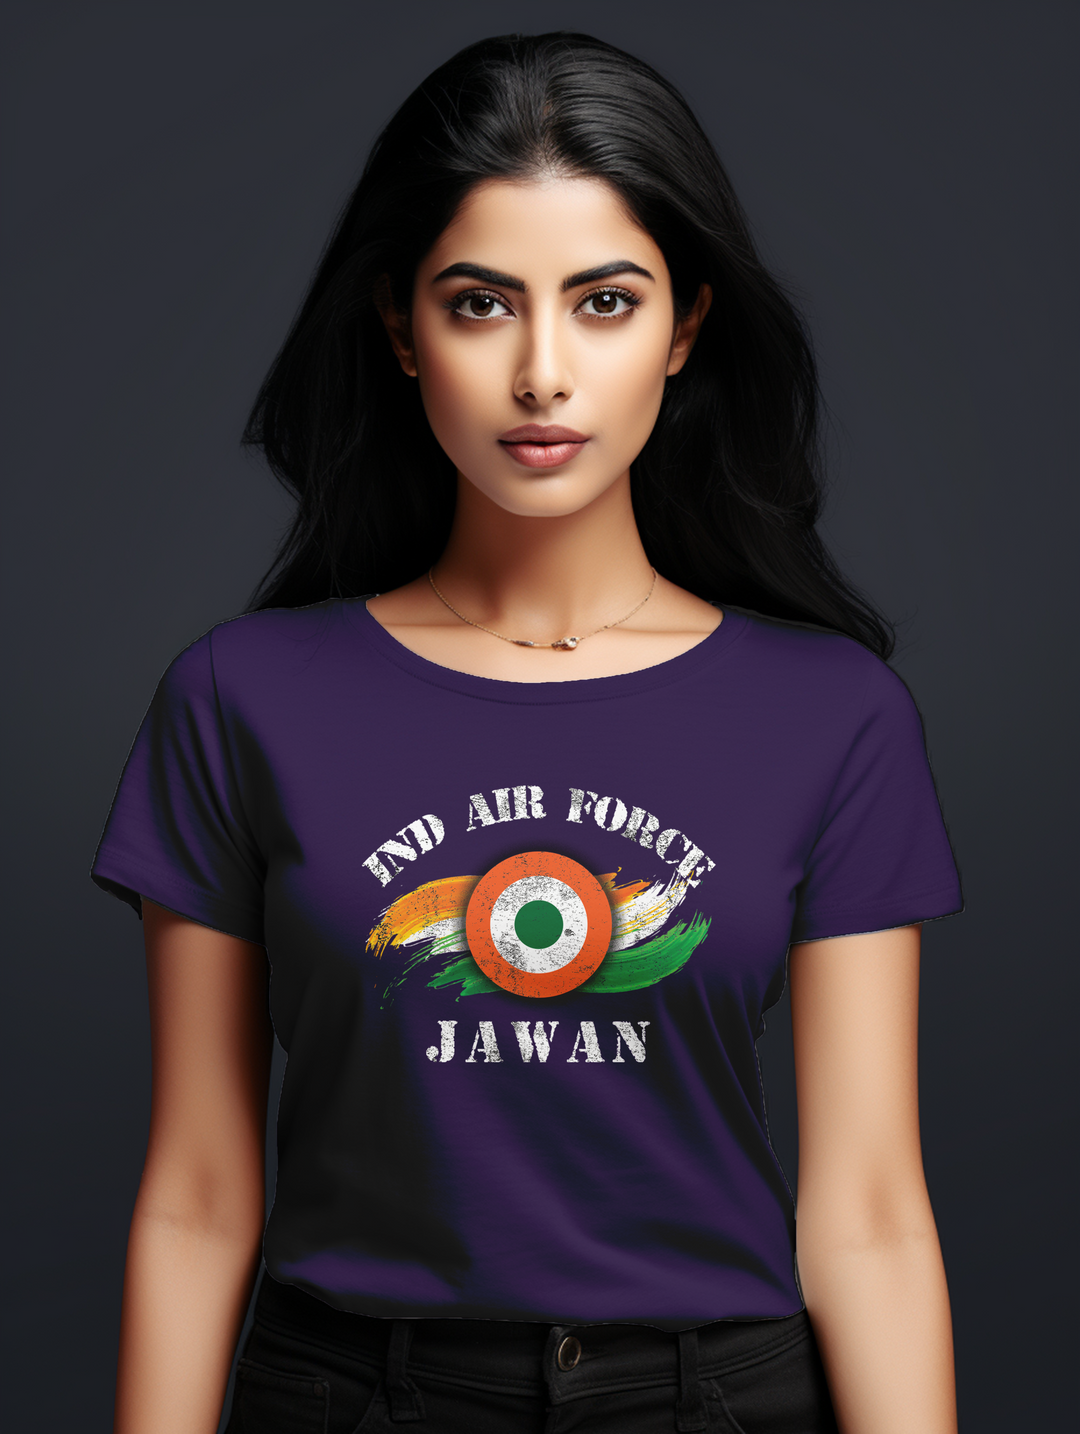 Women's IND Airforce Jawan tee